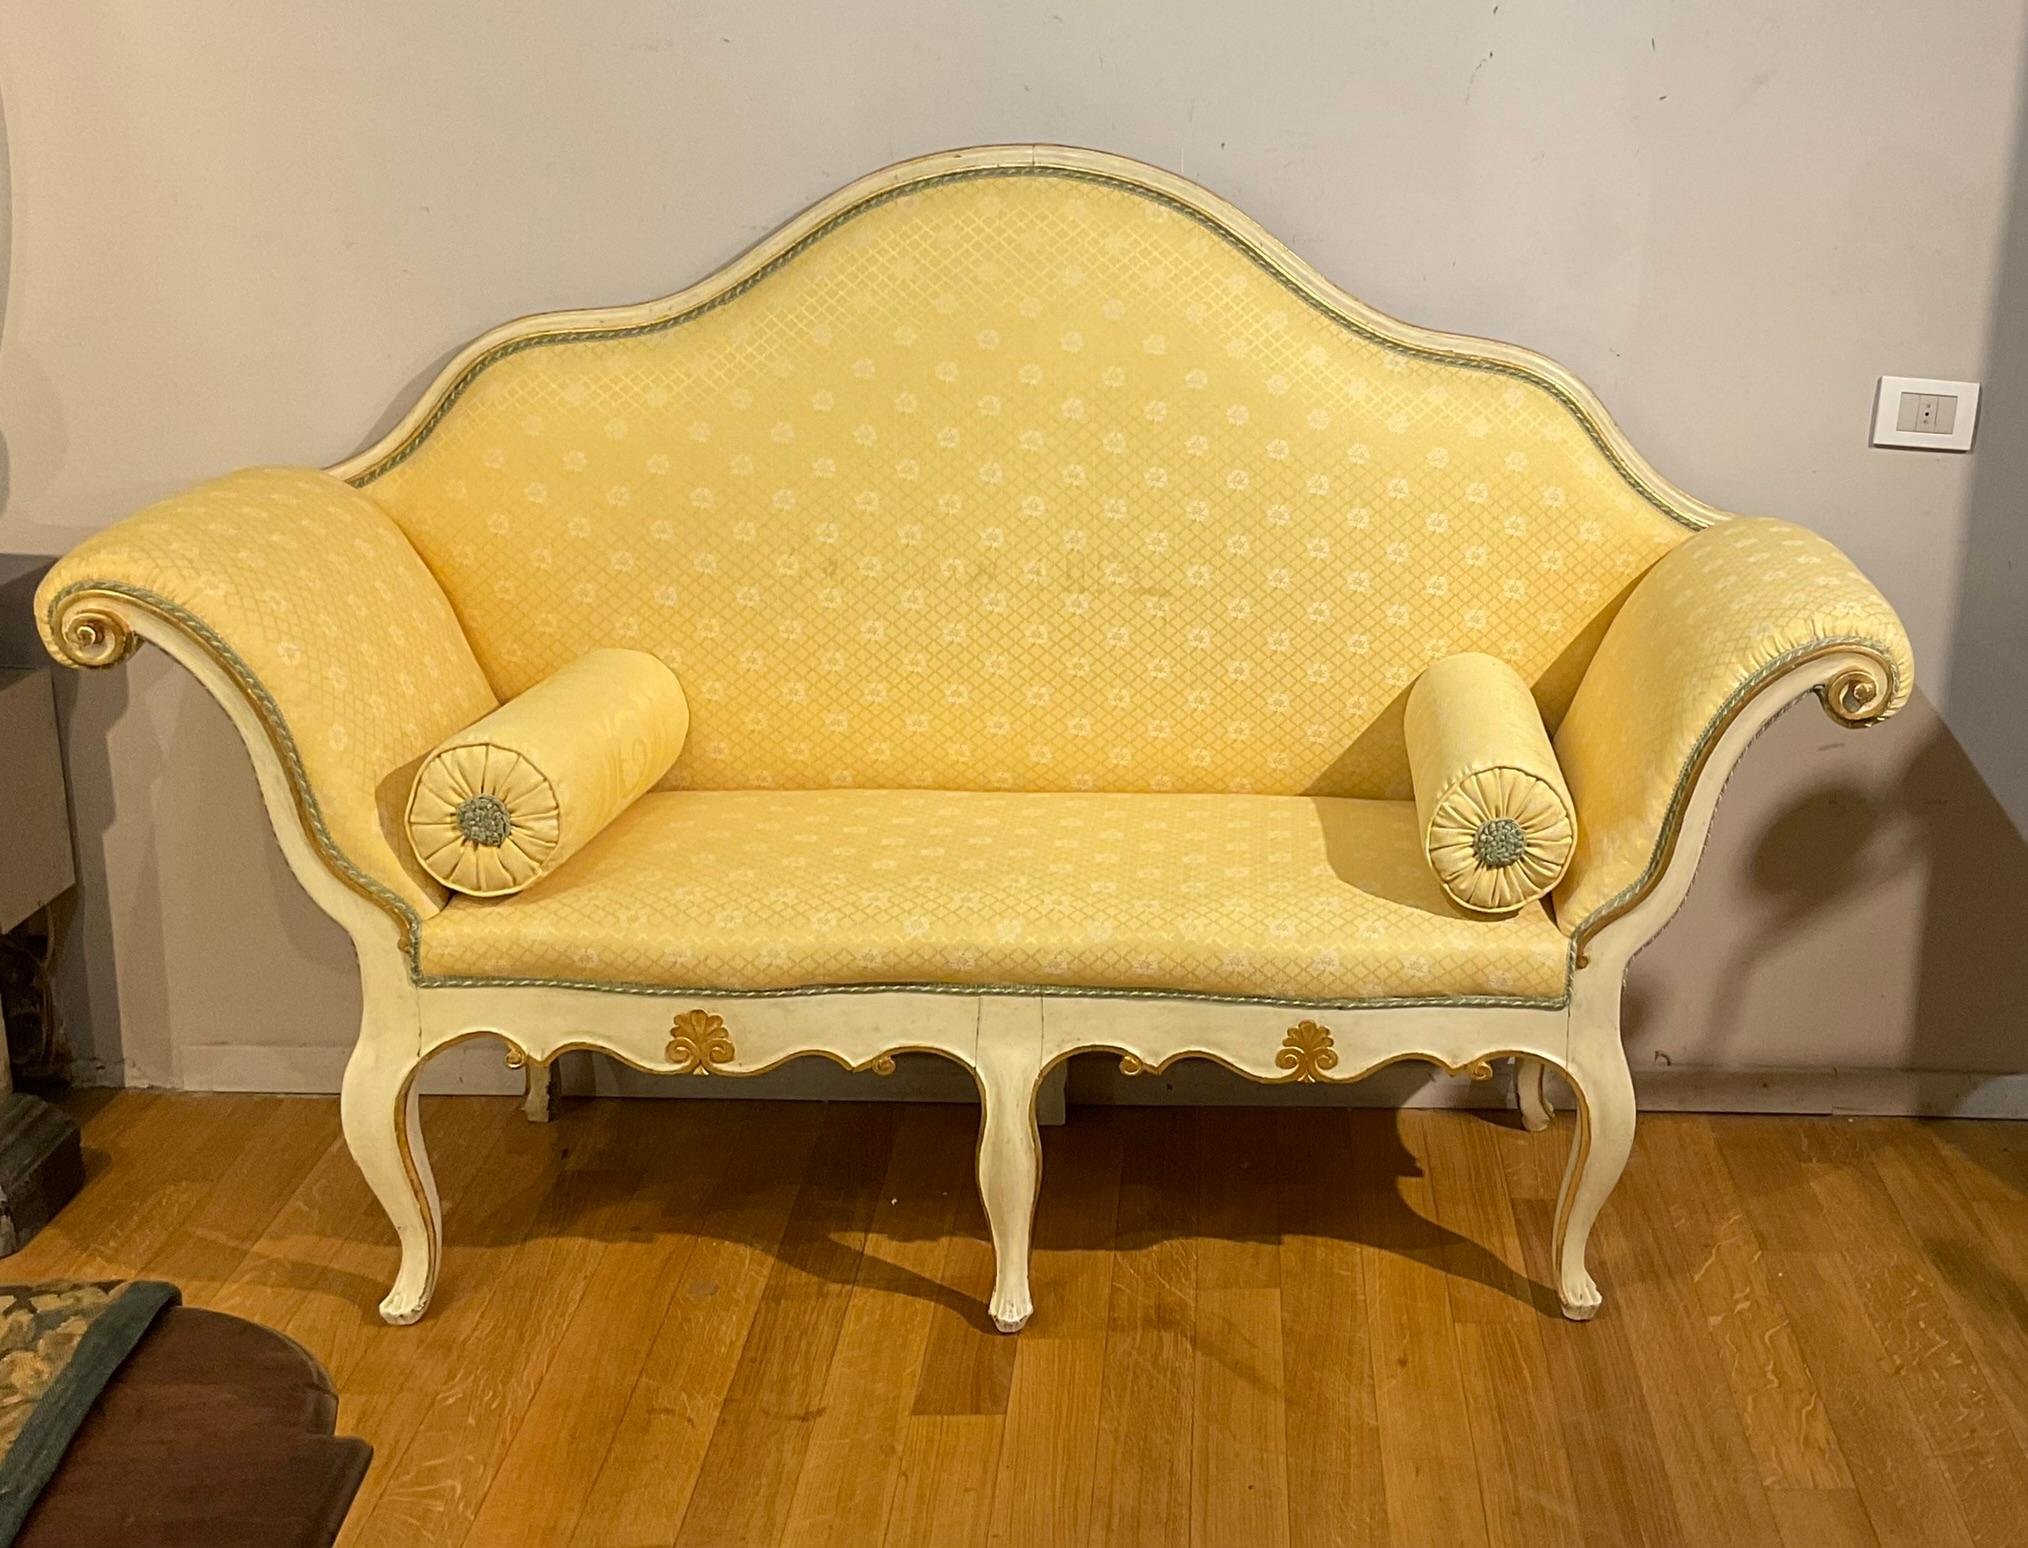 Elegantes Sofa aus cremefarben lackiertem Holz mit goldenen Schnitzereien, typisch für die piemontesische Manufaktur des 18. Jahrhunderts. Fünf gewellte Beine, ebenfalls geschnitzt. Sehr bequem, obwohl sie nicht sehr tief sind. Abgeschlossen mit